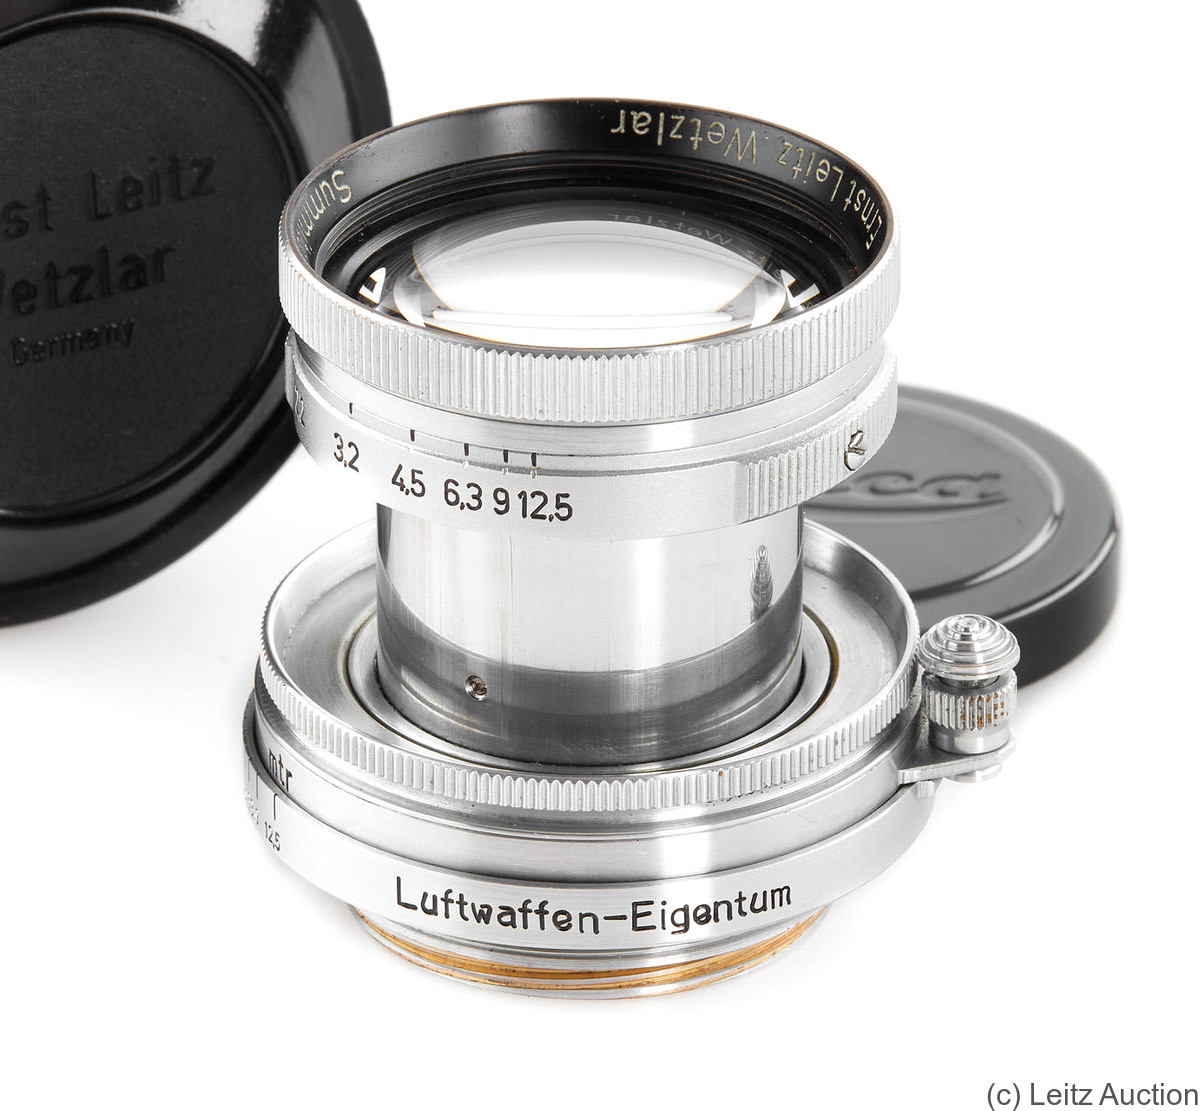 Leitz: 50mm (5cm) f2 Summar (SM, collapsible, chrome) 'Luftwaffen-Eigentum' camera